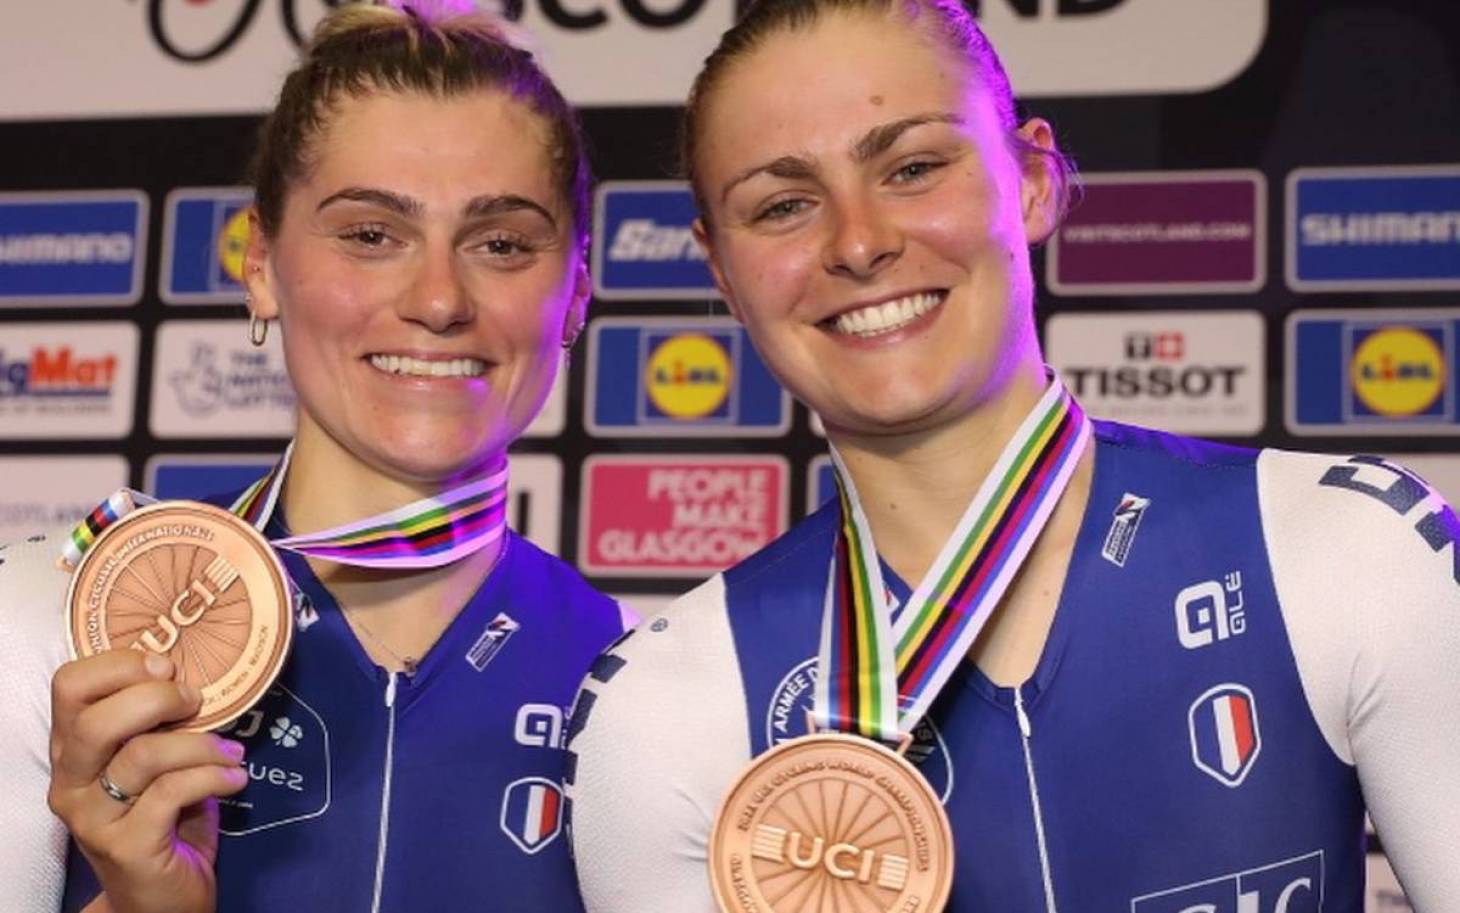 Cyclisme –  Clara Copponi décroche le bronze de la madison aux Mondiaux de Glasgow